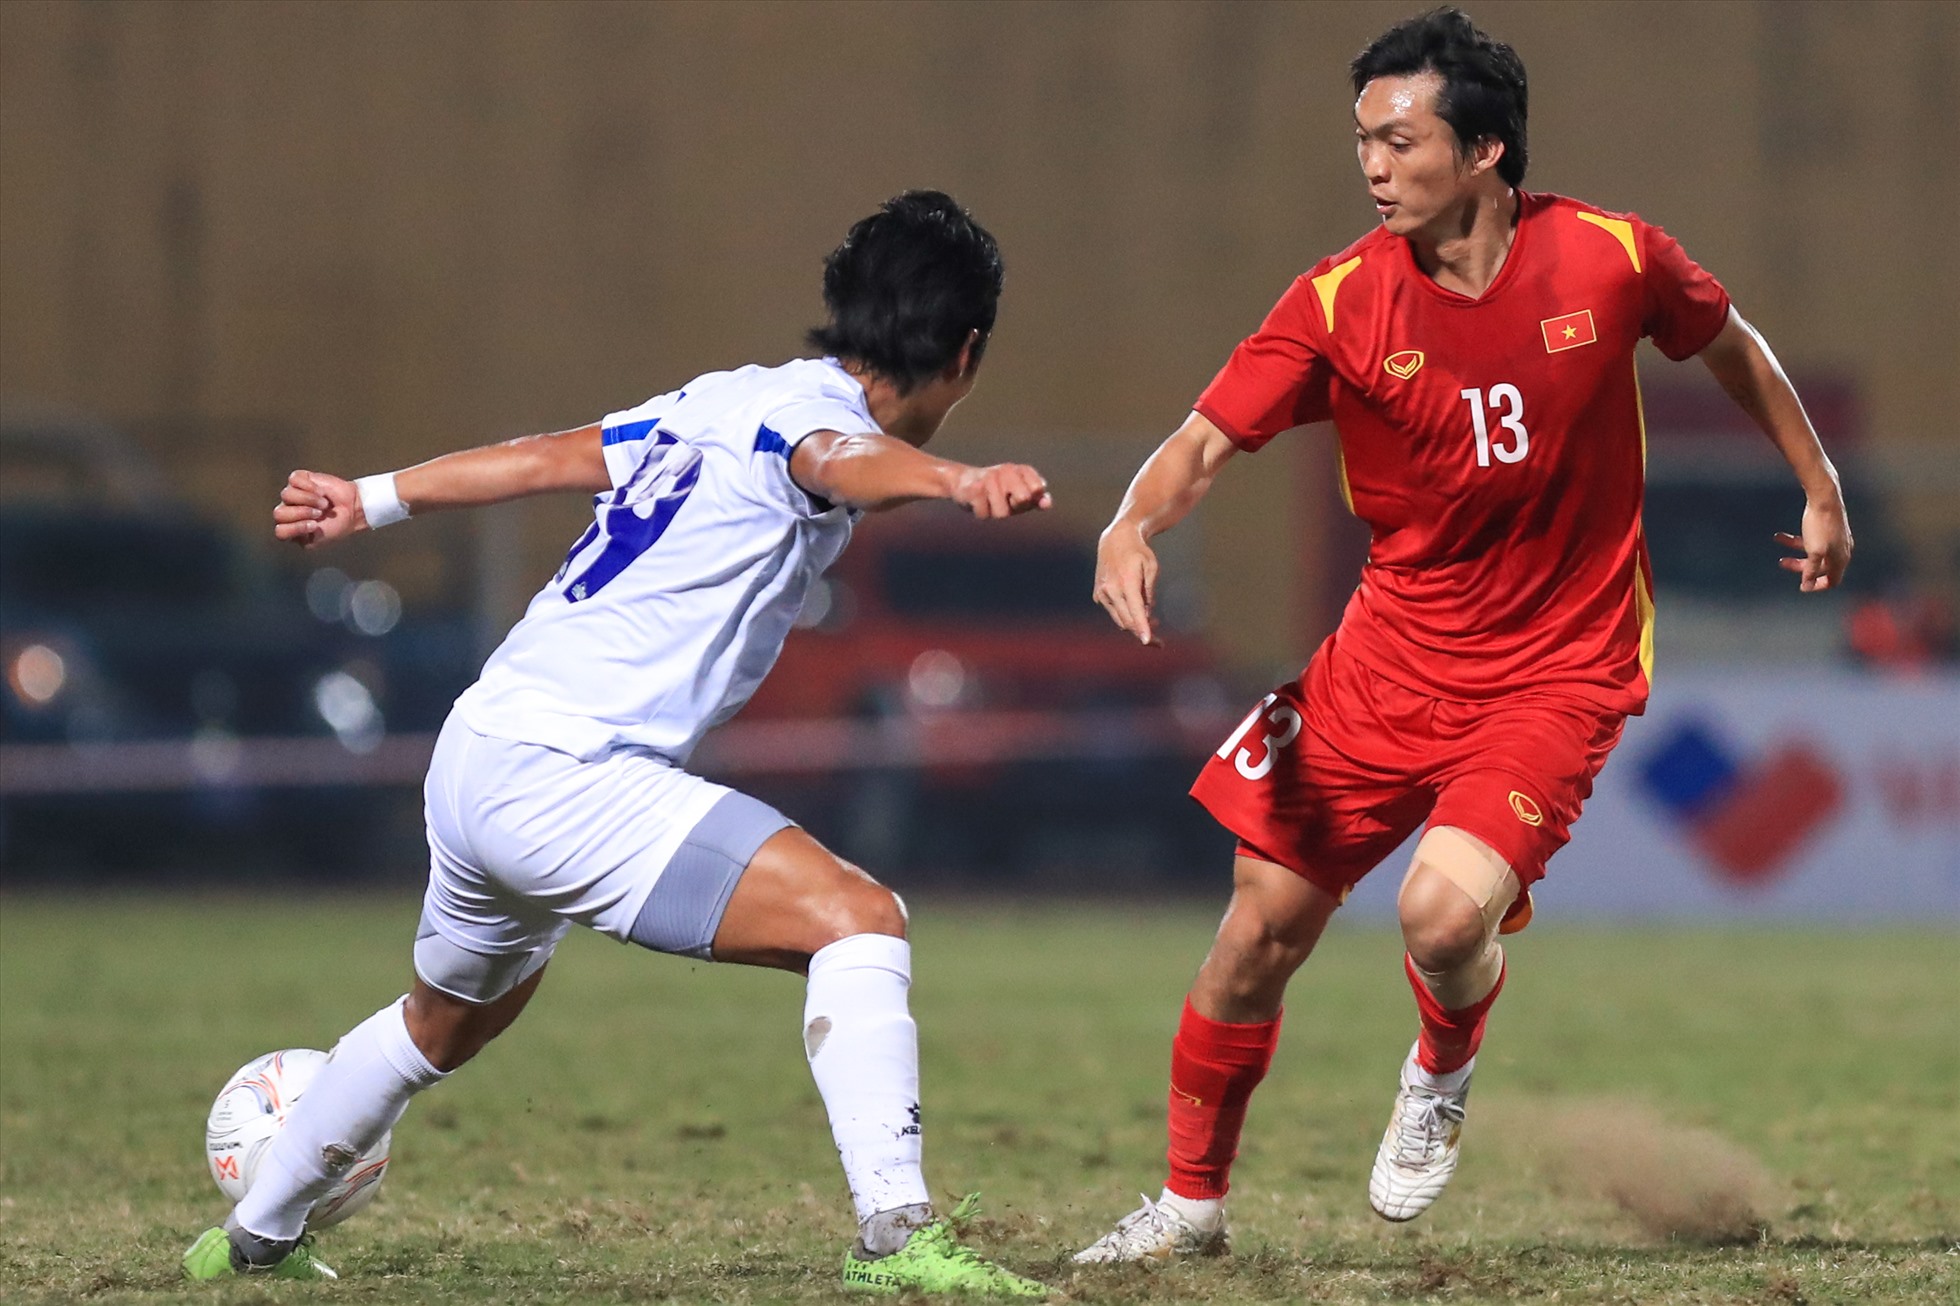 Hôm nay (14.12), trận giao hữu giữa đội tuyển Việt Nam và Philippines đã diễn ra trên sân Hàng Đẫy. Cả hai đội đều chủ động nhập cuộc chặt chẽ, thăm dò nhau.